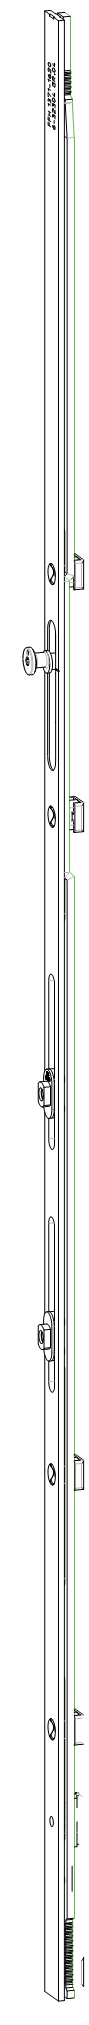 GU-ITALIA -  Cremonese GU-966 per complanare parallelo altezza maniglia fissa prolungabile senza dss - gr / dim. 1340 - alt. man. 600 - lbb/hbb 1621 - 1870